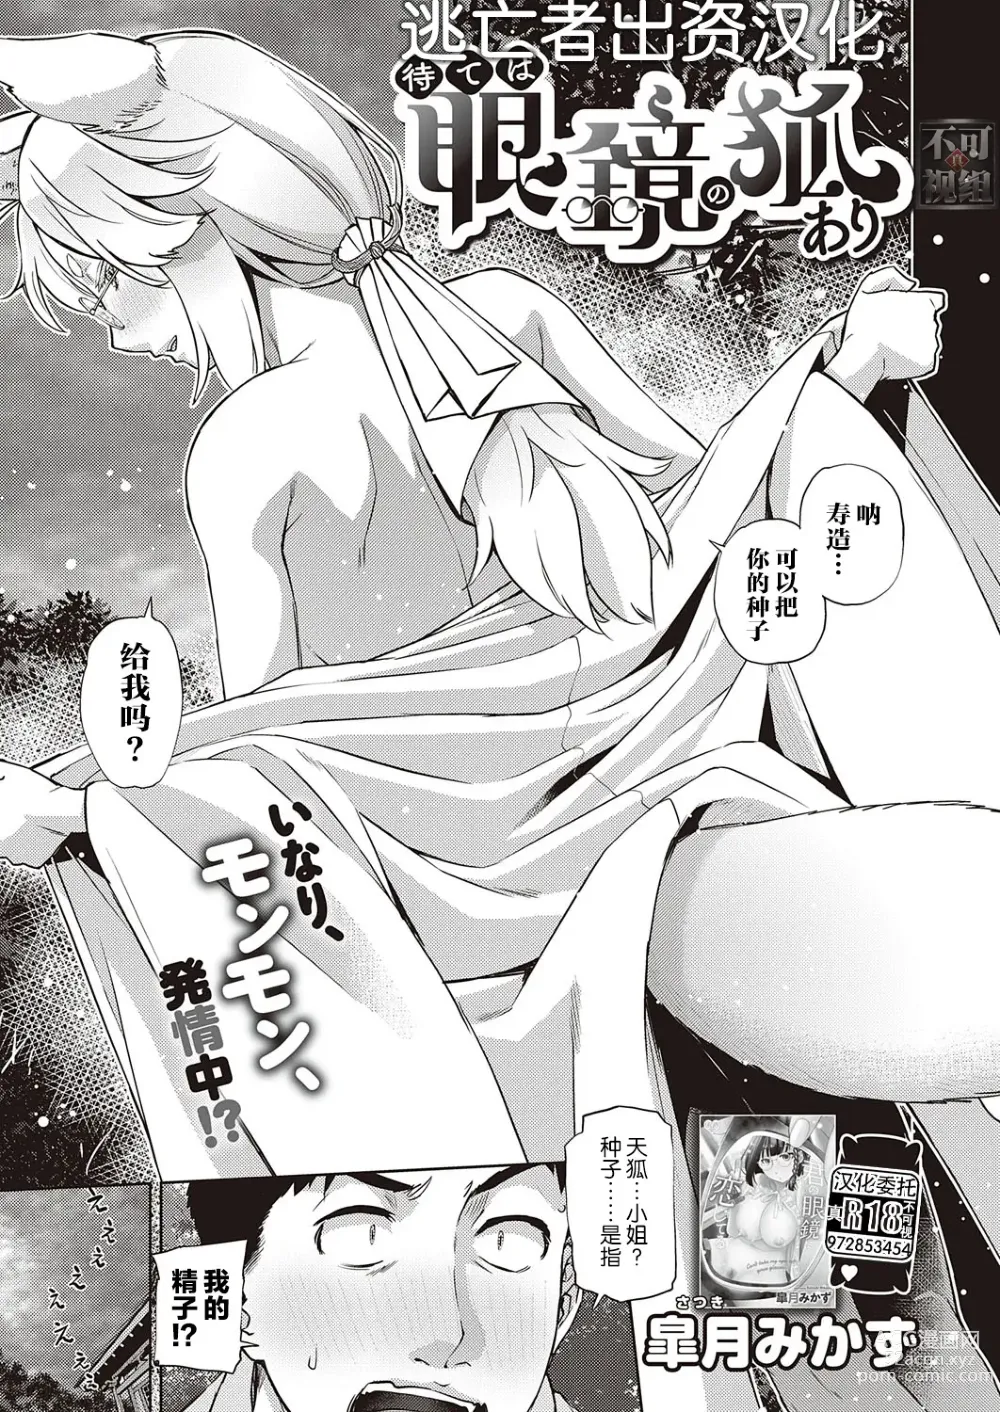 Page 1 of manga Mate ba Megane no Kitsune ari